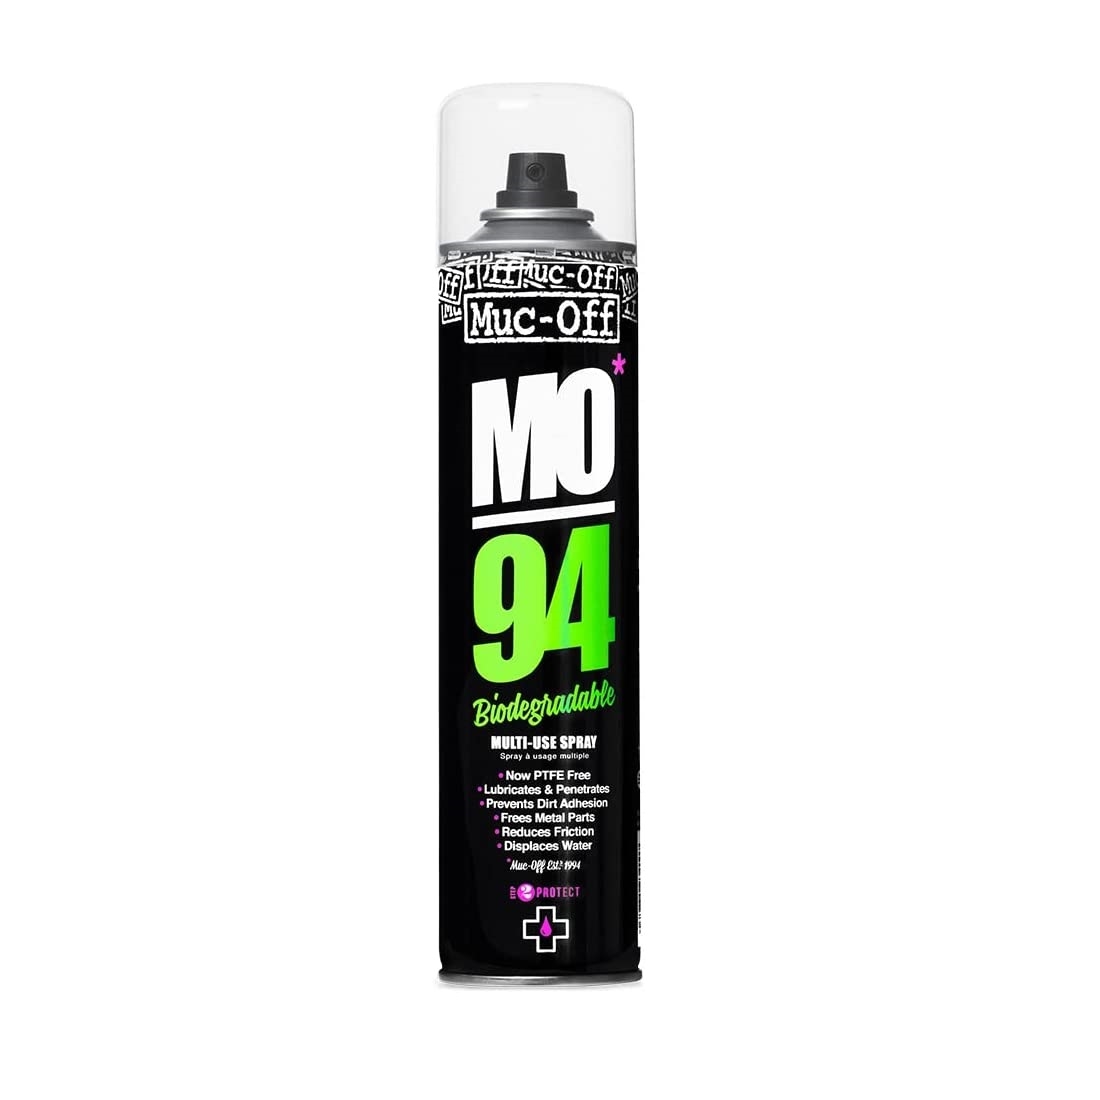 MO94 spray lubricante PTFE Biodegradable tamaño taller 750ml